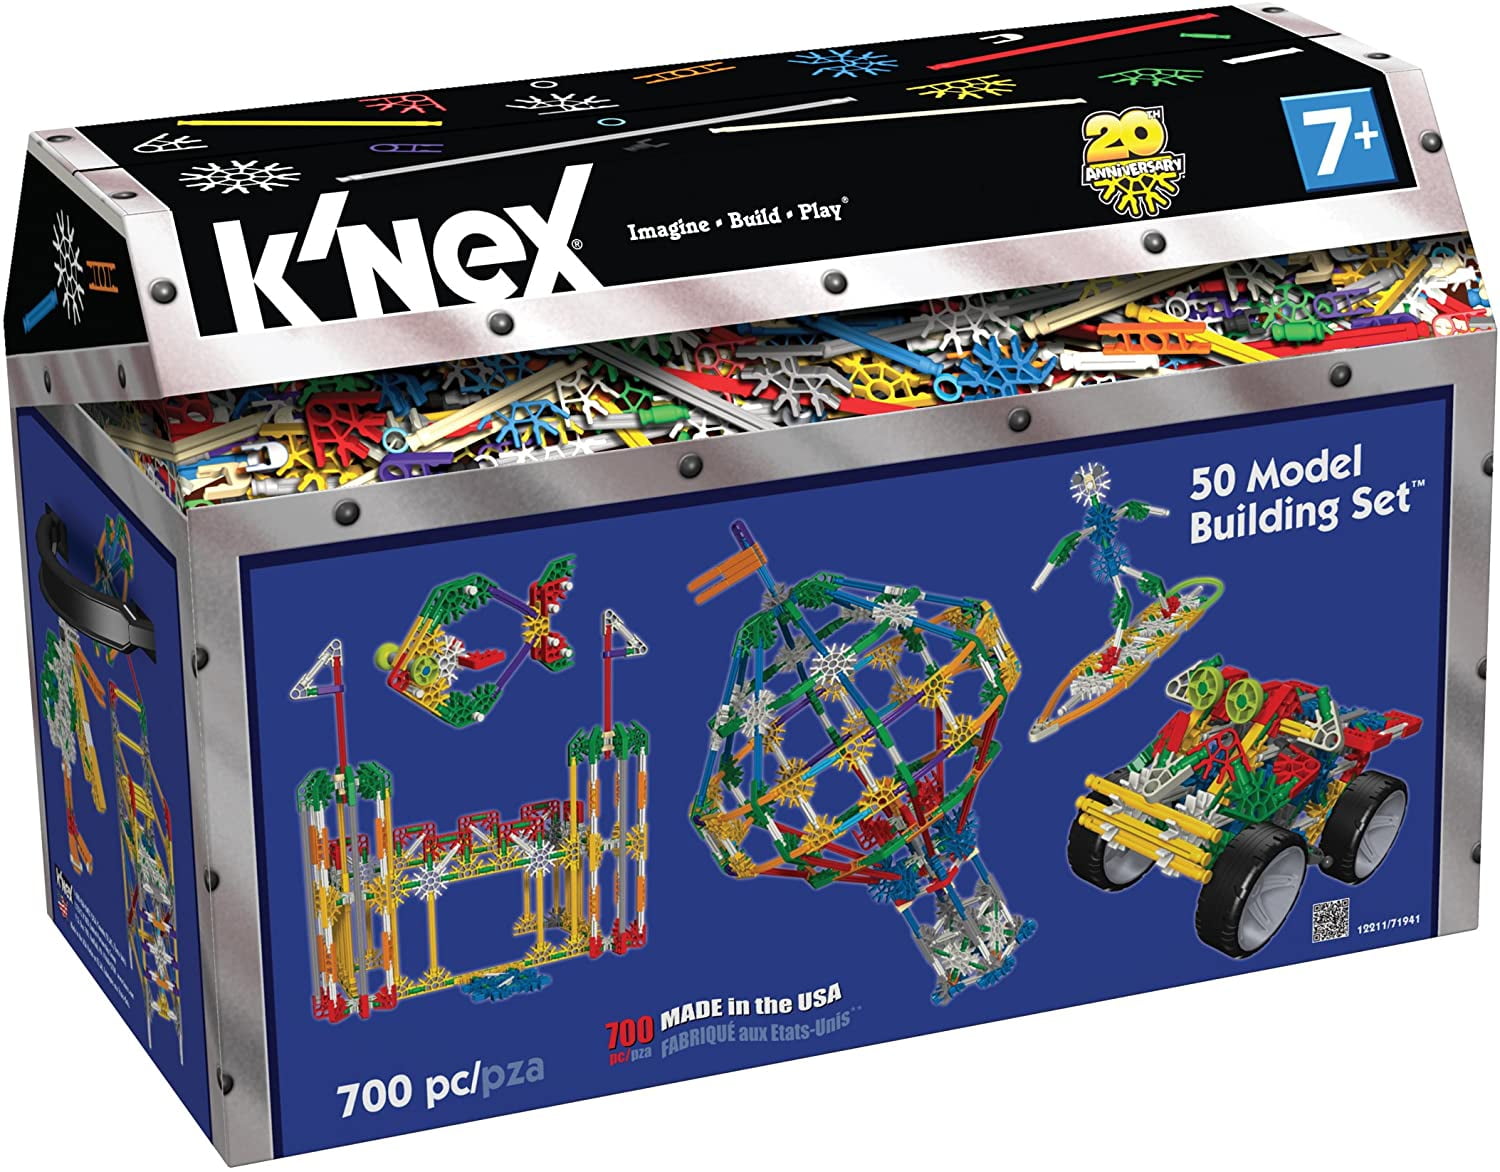 K'NEX Classics 50 Model Building Set - 700 Pieces - Walmart.com